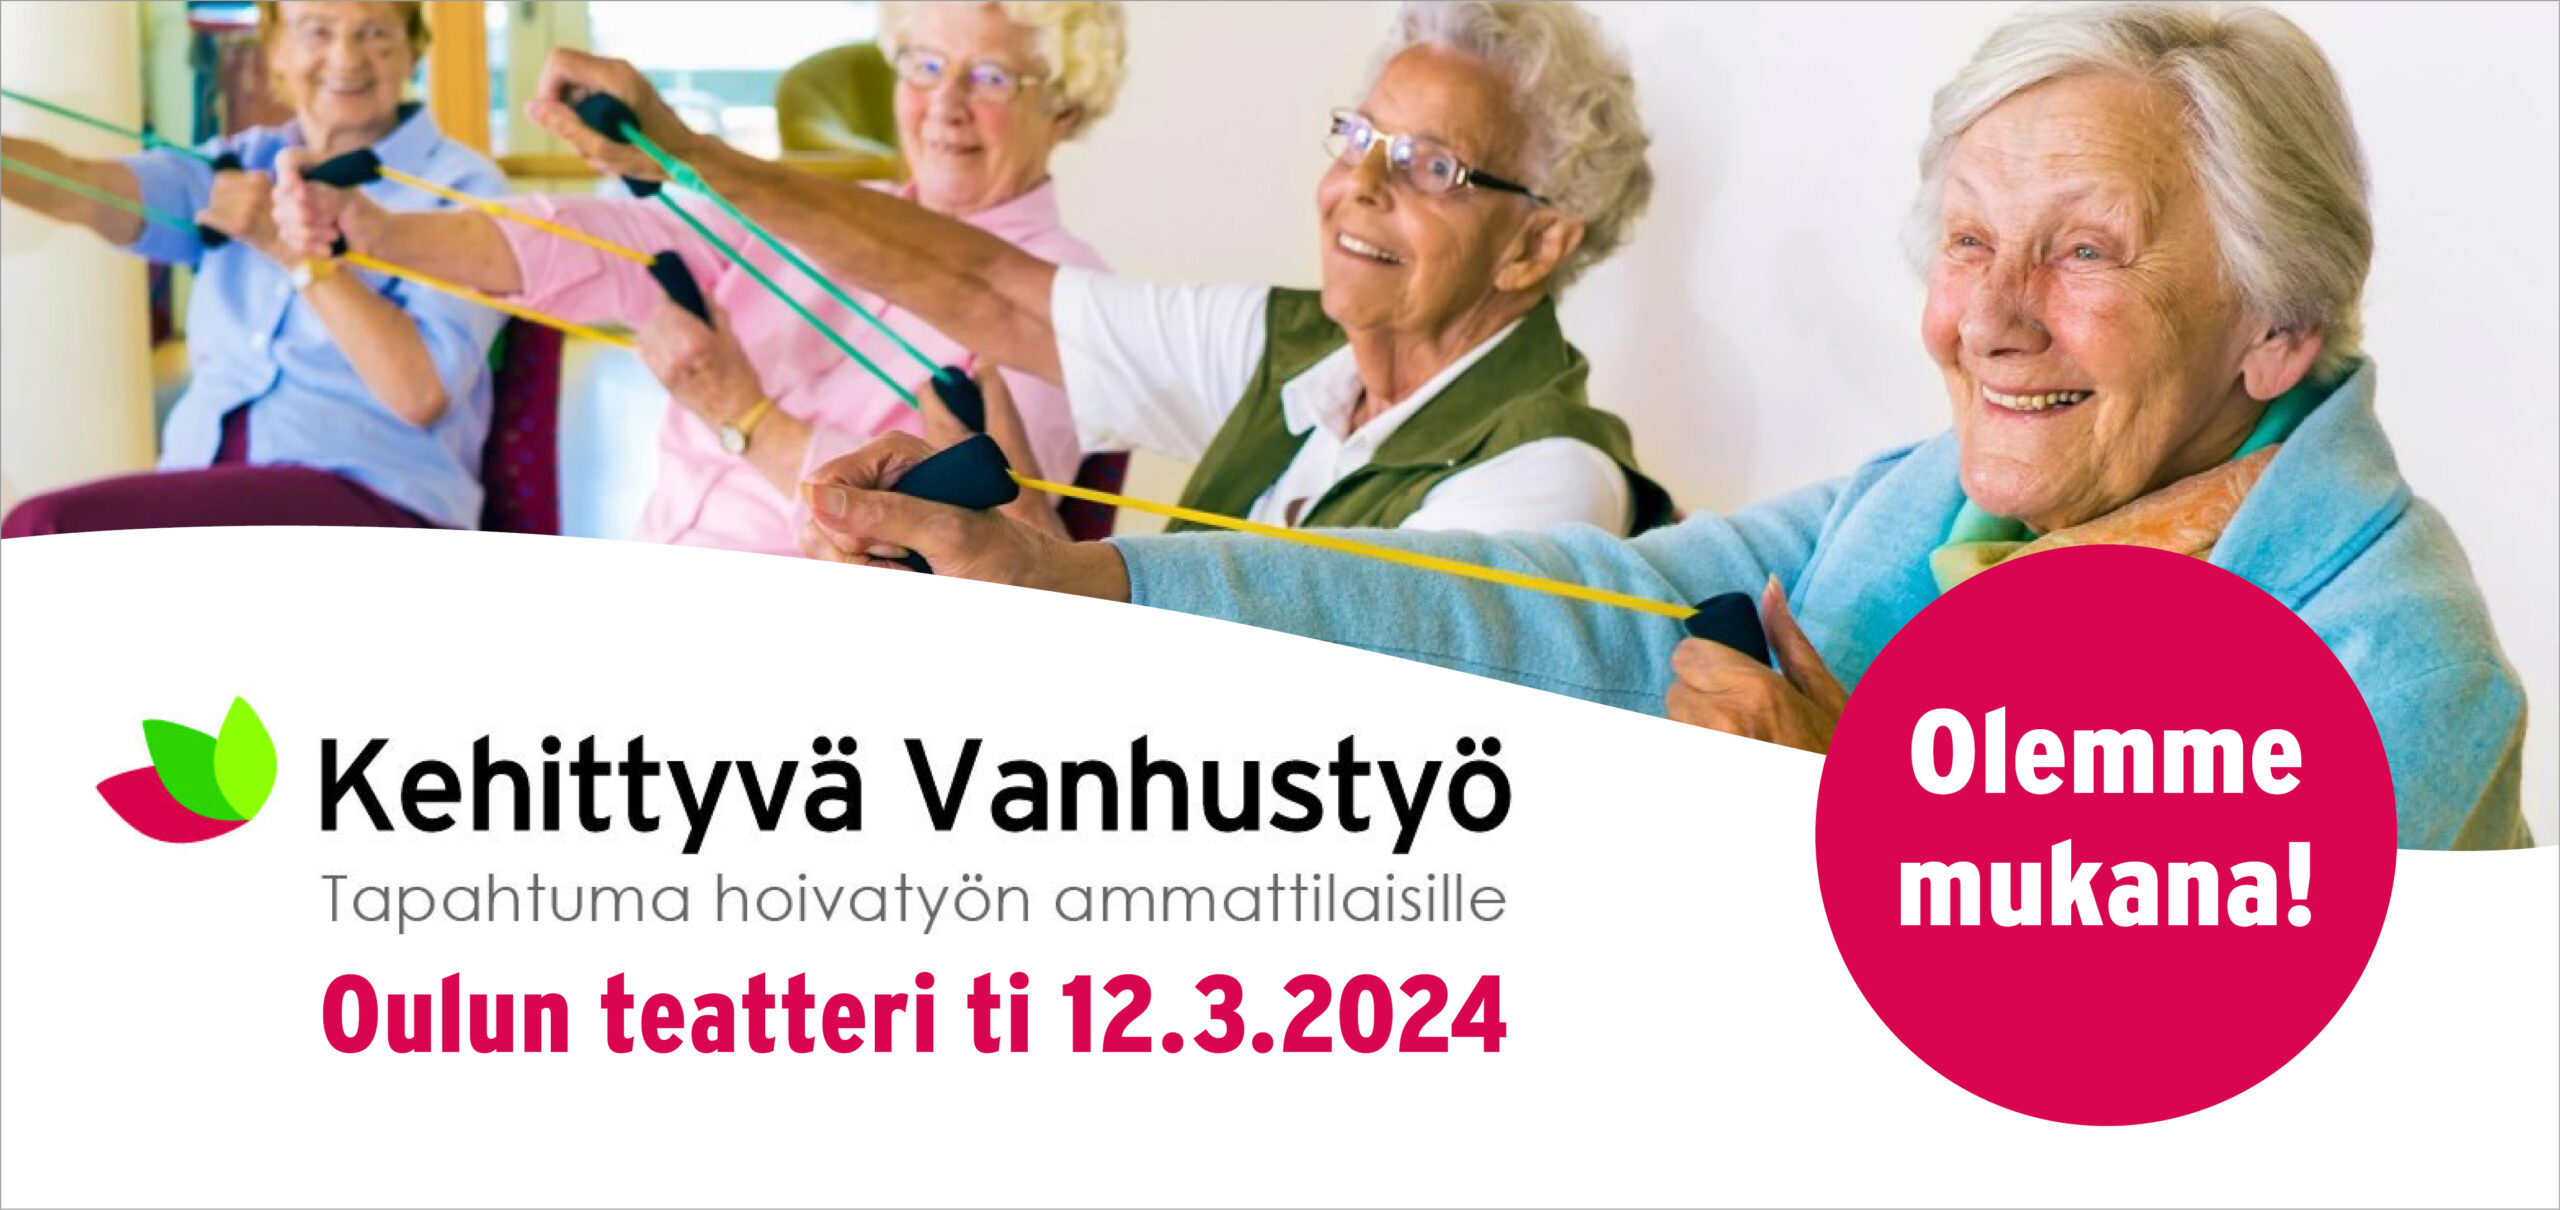 Kehittyvä vanhustyö Oulu 12.3.2024